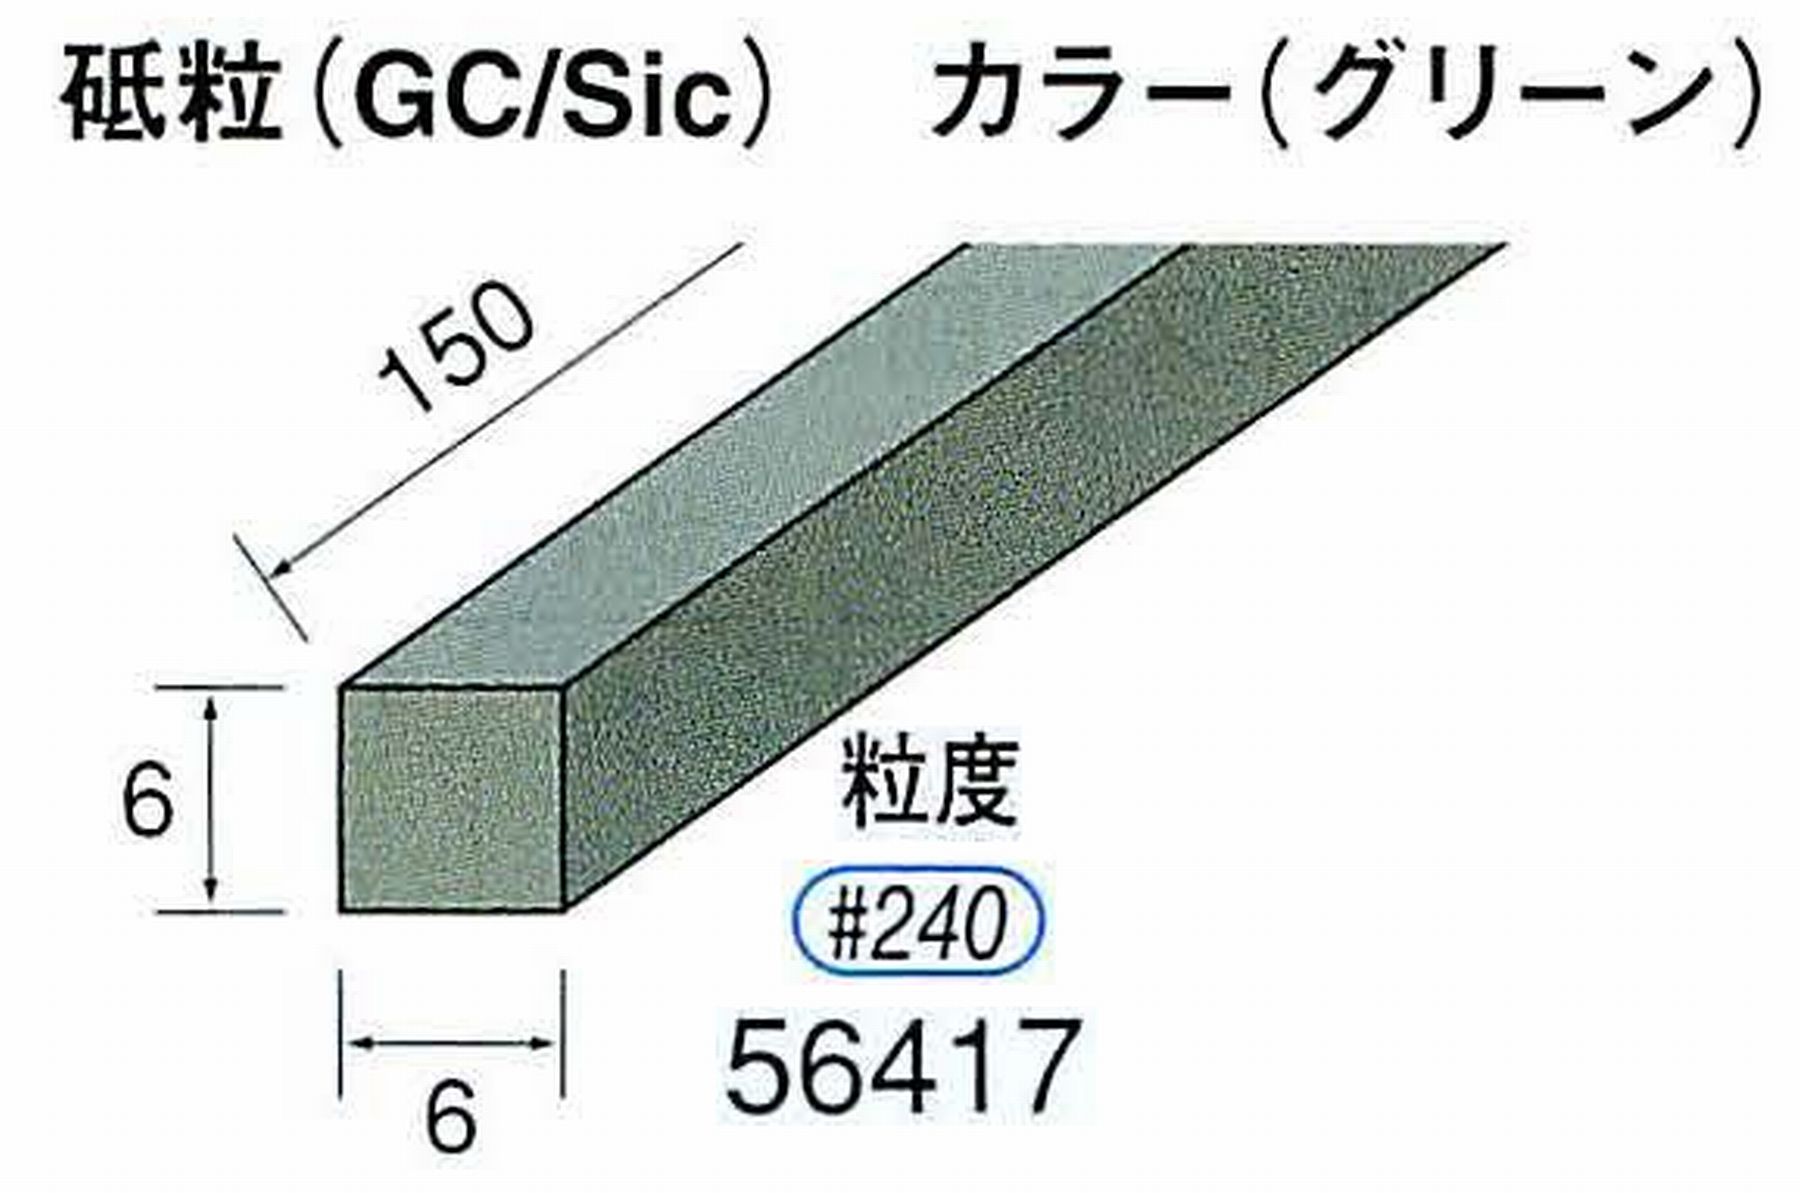 ナカニシ/NAKANISHI スティック砥石 グリーン・フィニッシュシリーズ 砥粒(GC/Sic) 56417